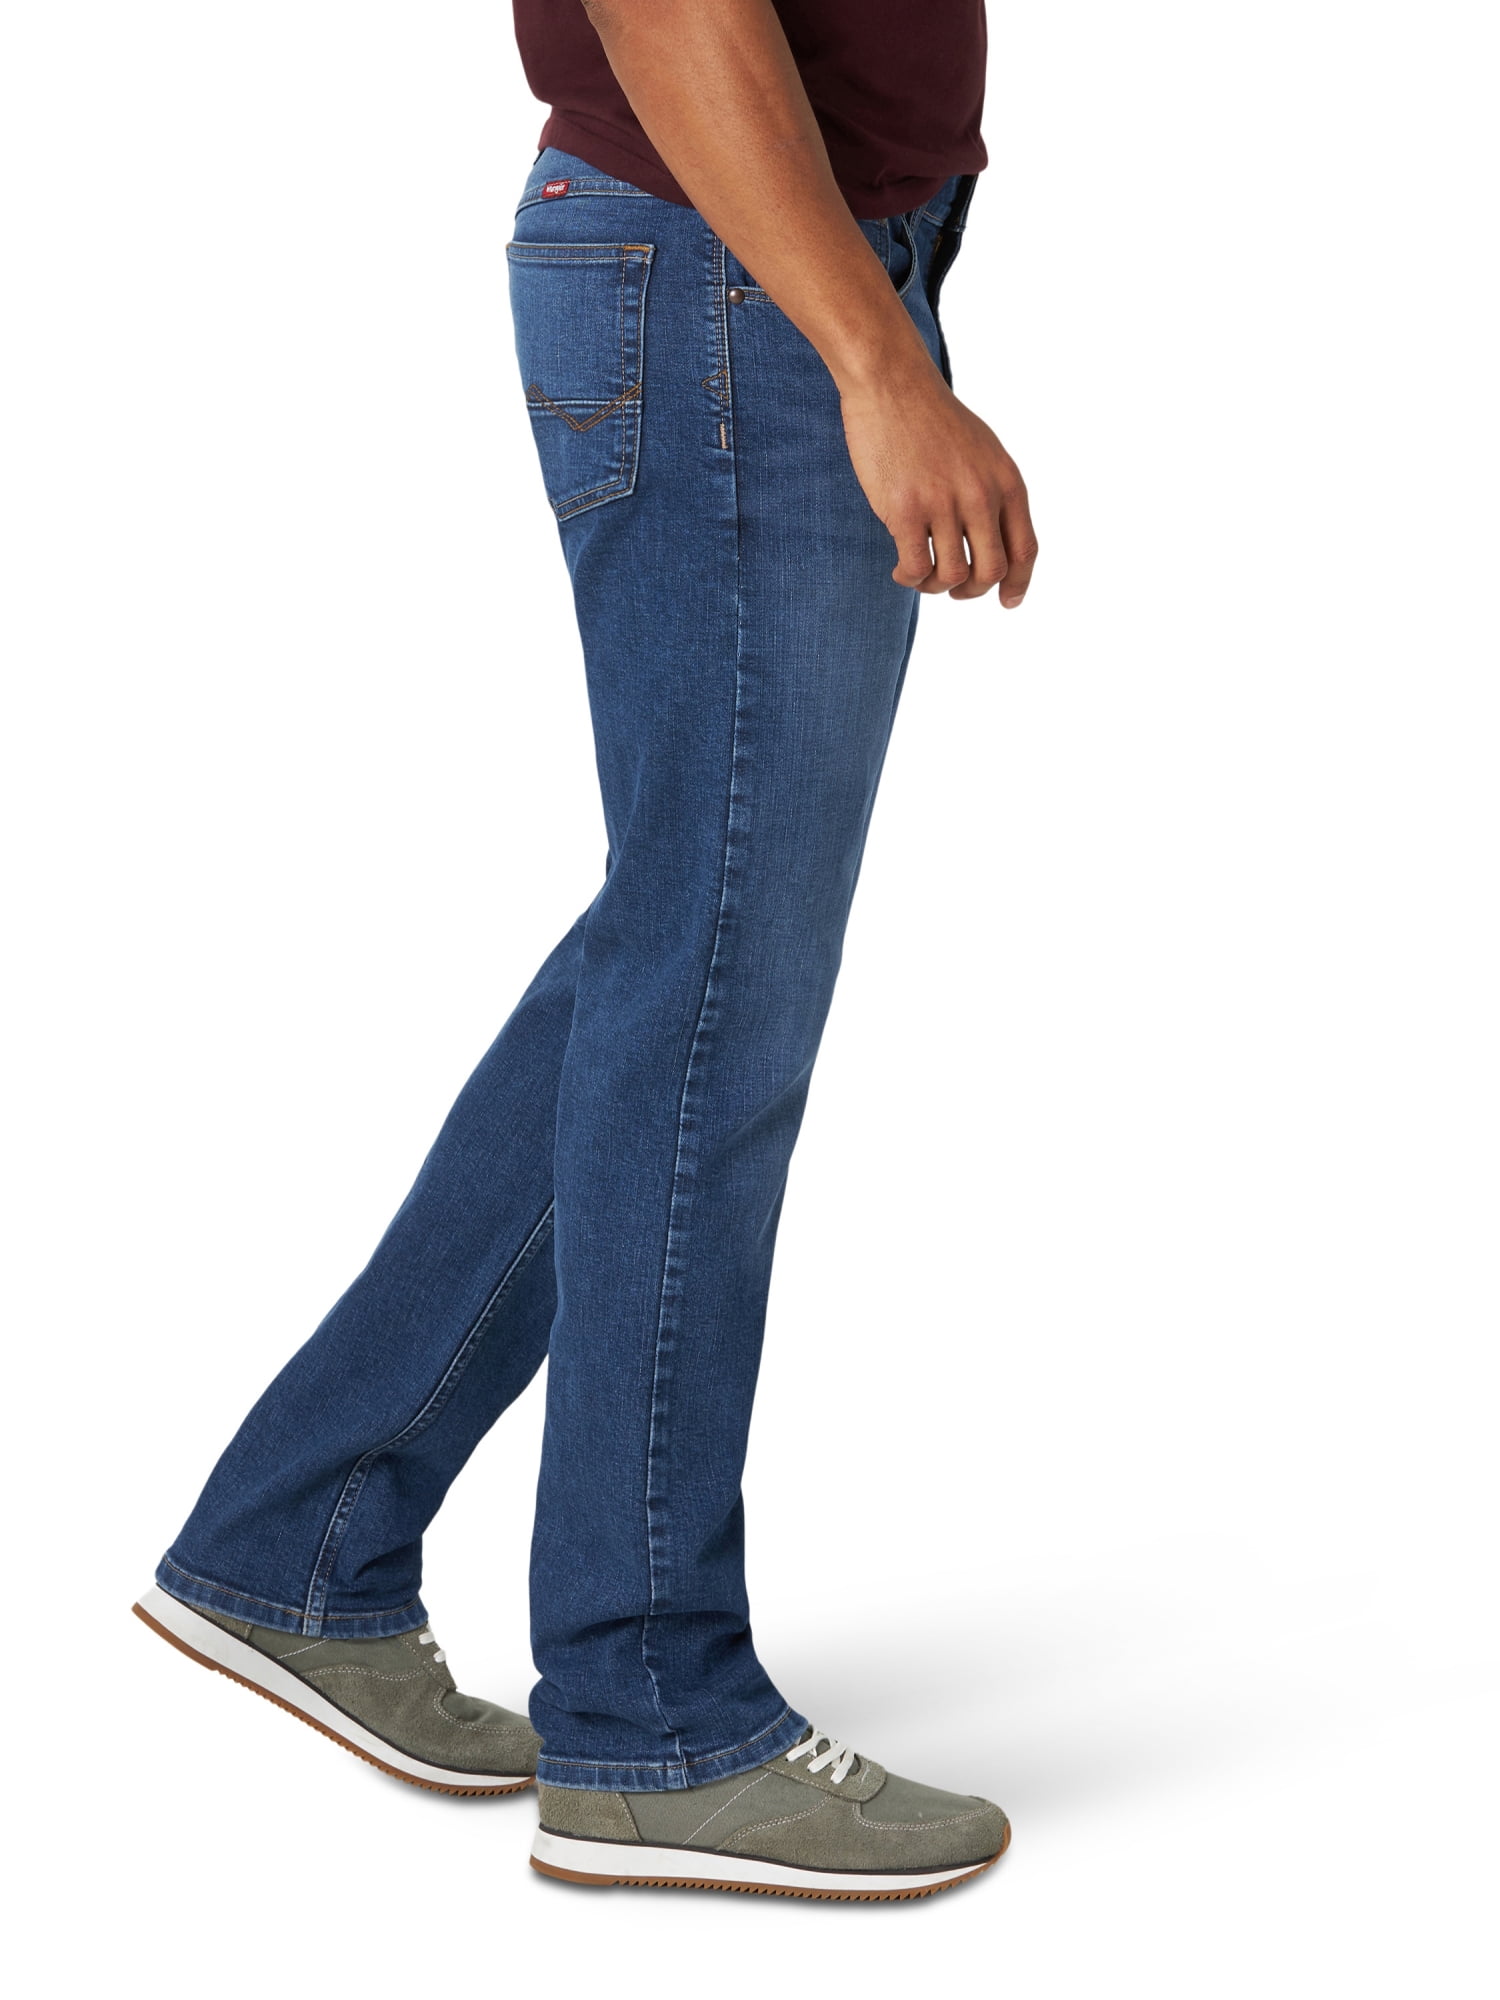 Wrangler Men's Slim Straight Jeans 